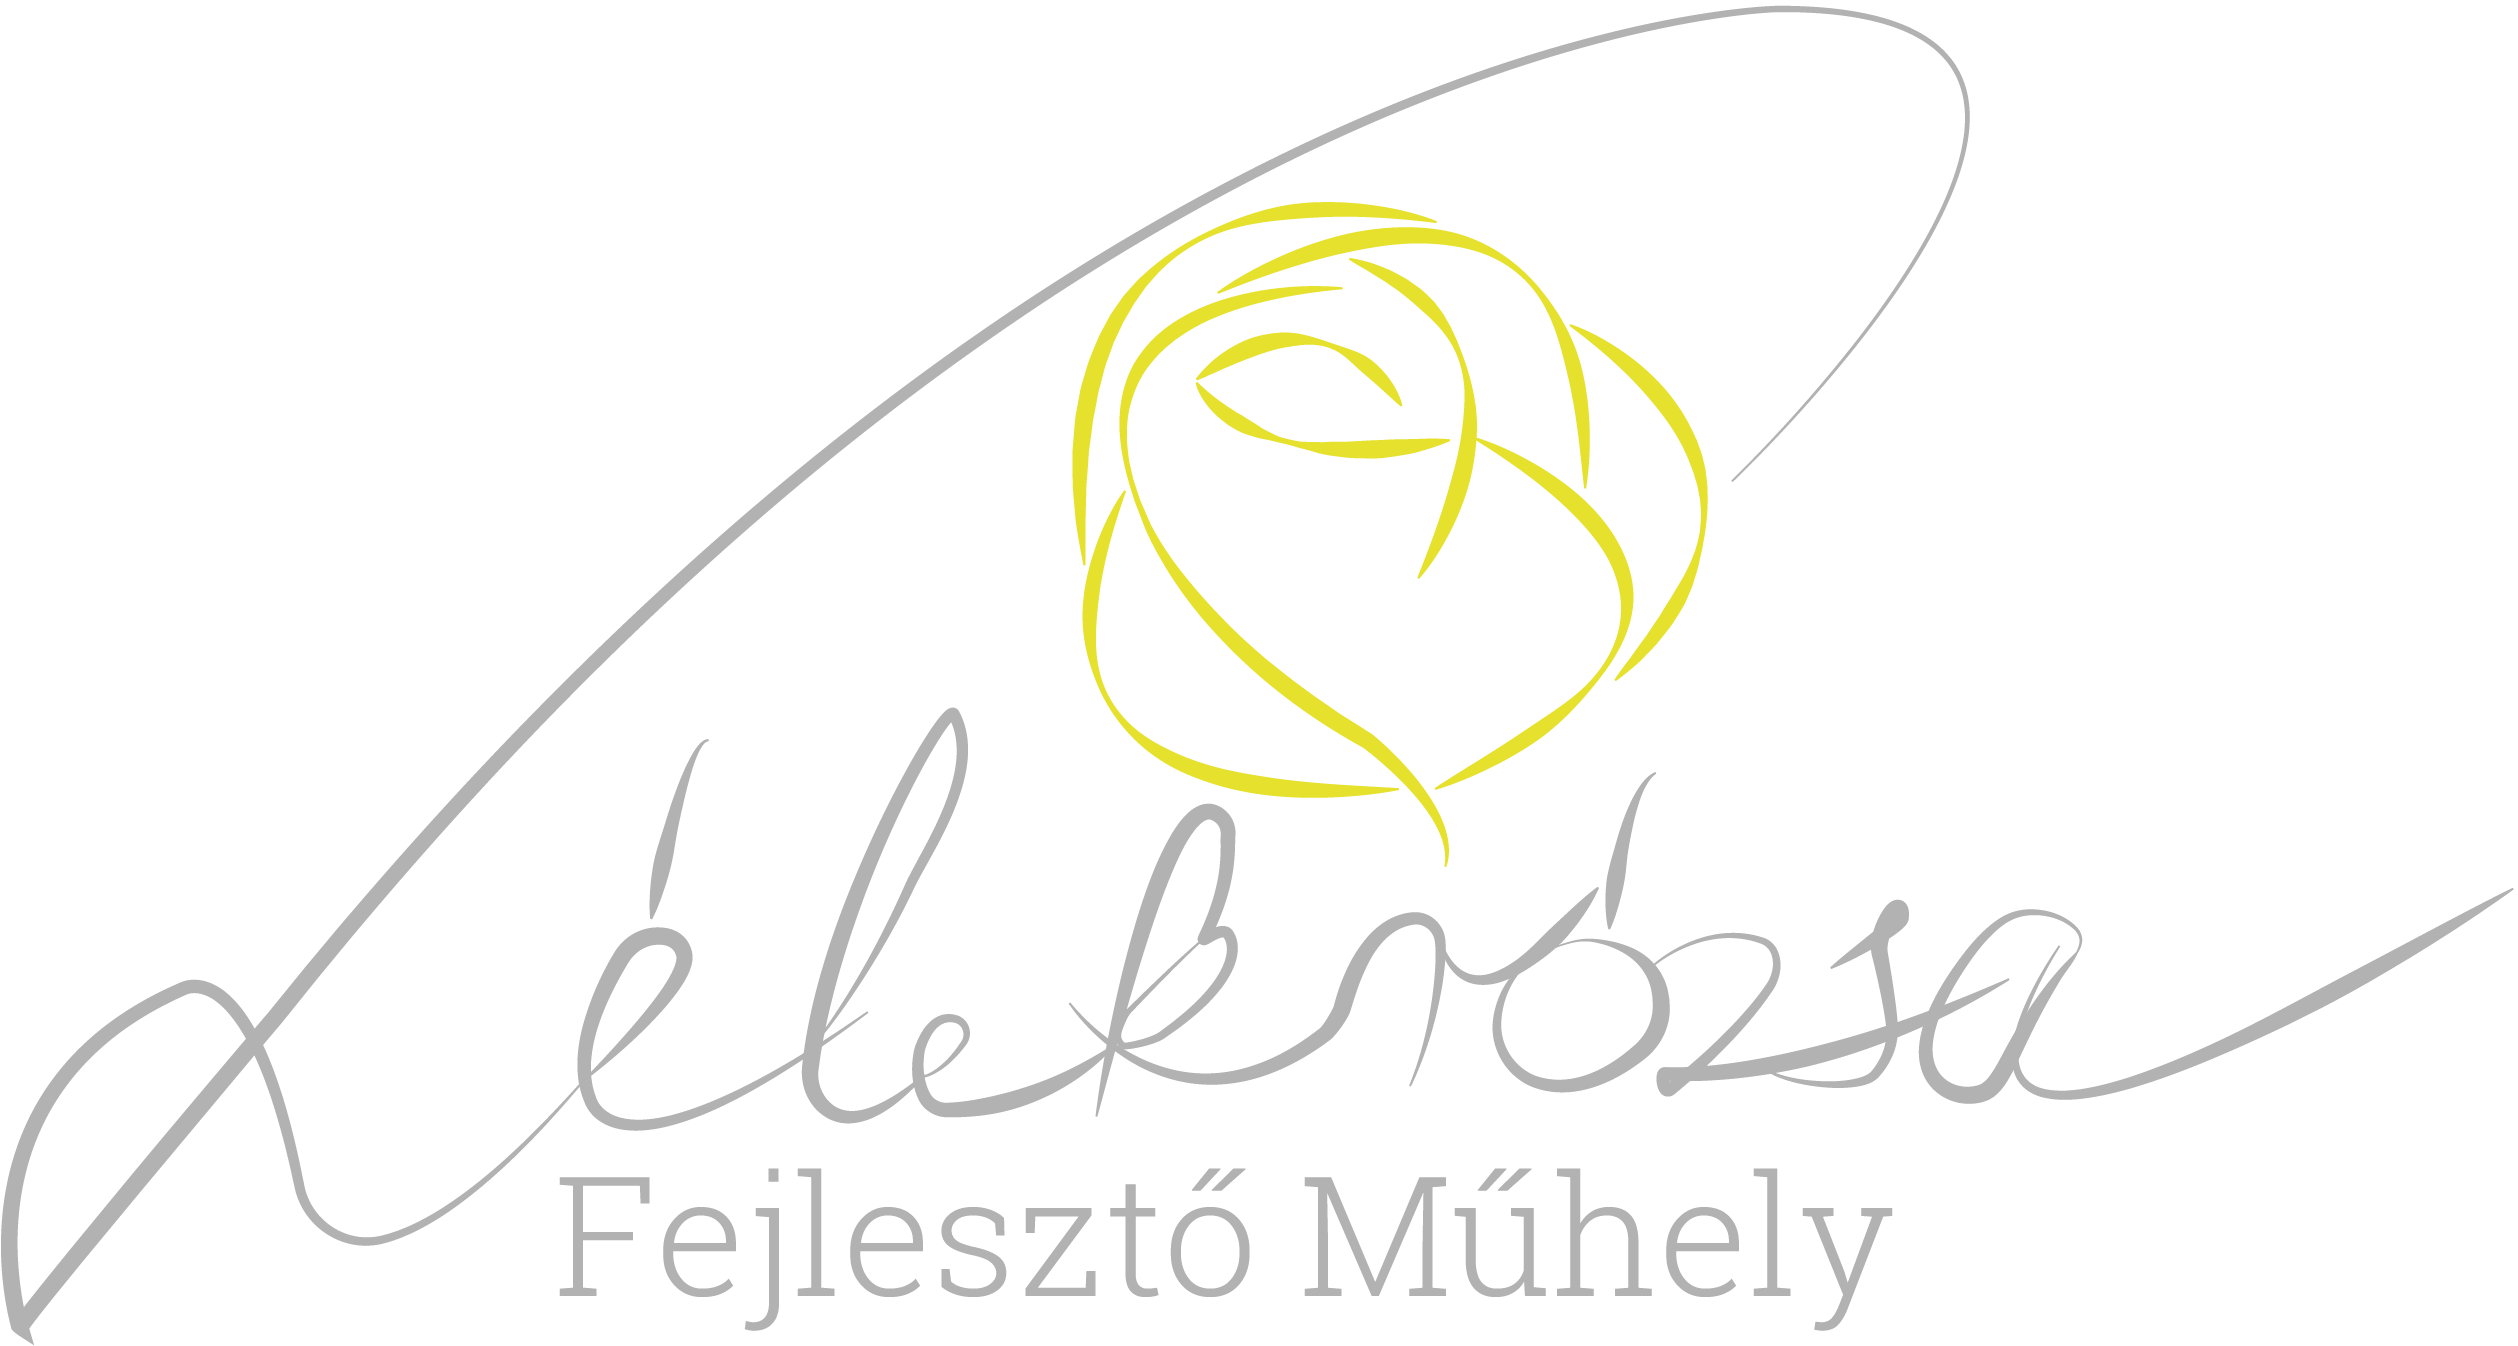 Lélekrózsa Fejlesztő Műhely logó